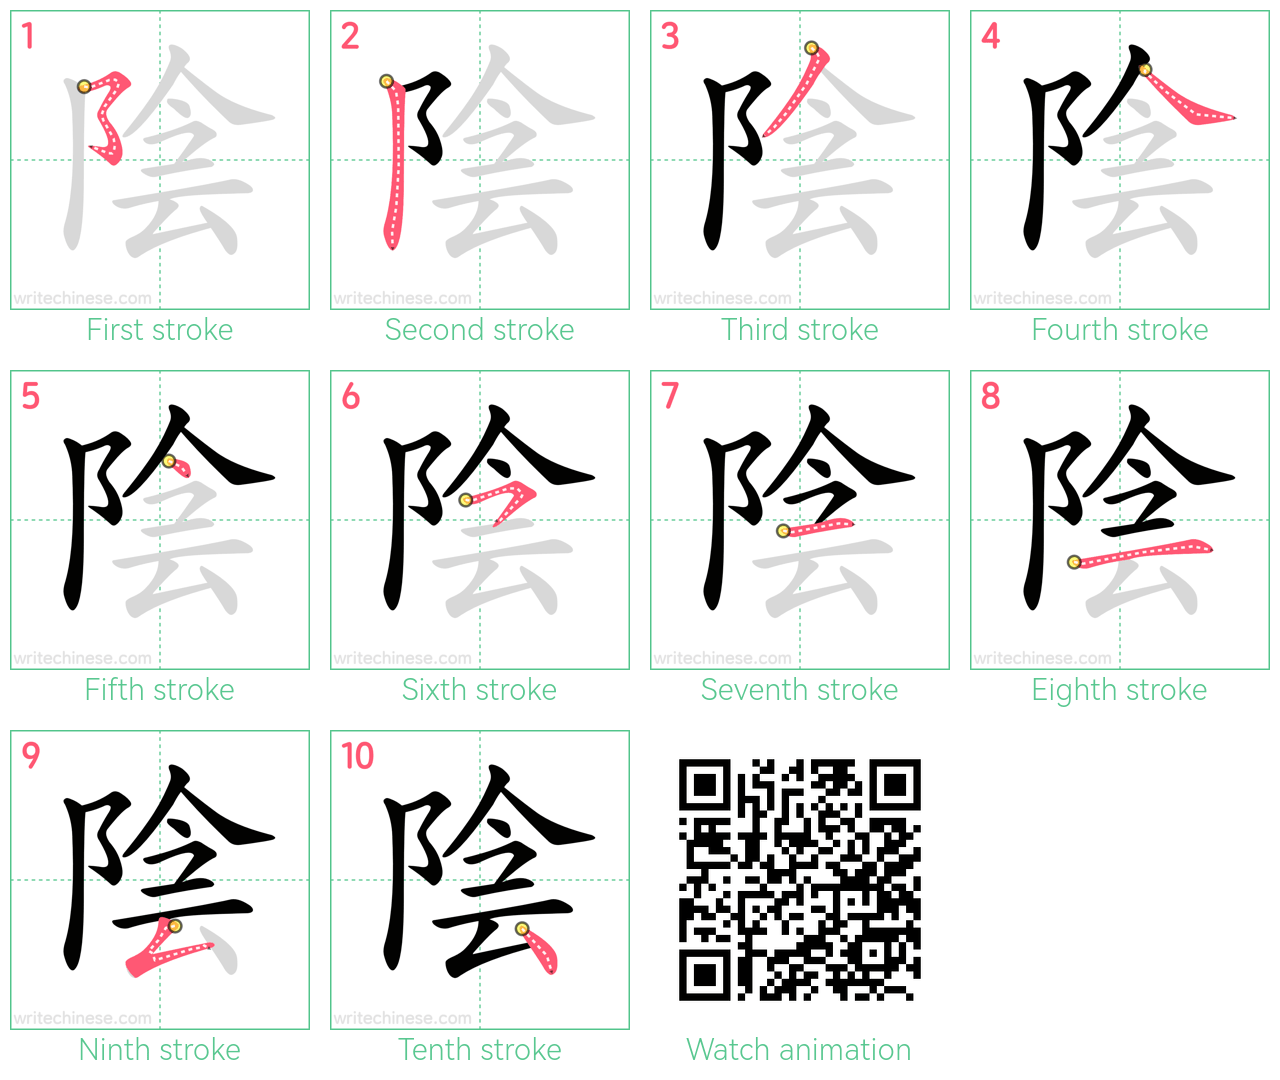 陰 step-by-step stroke order diagrams